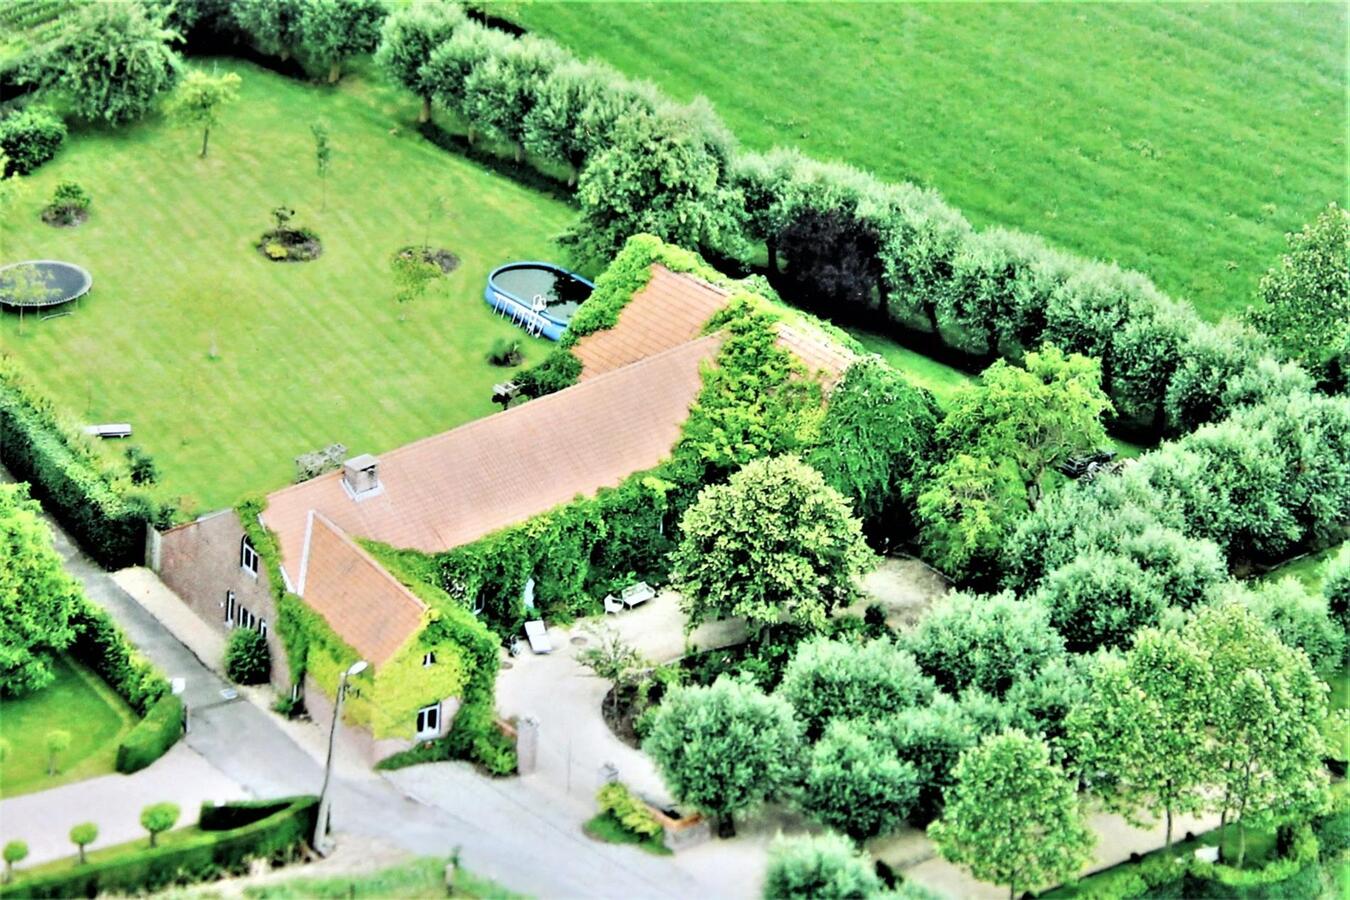 Property sold in Wolvertem